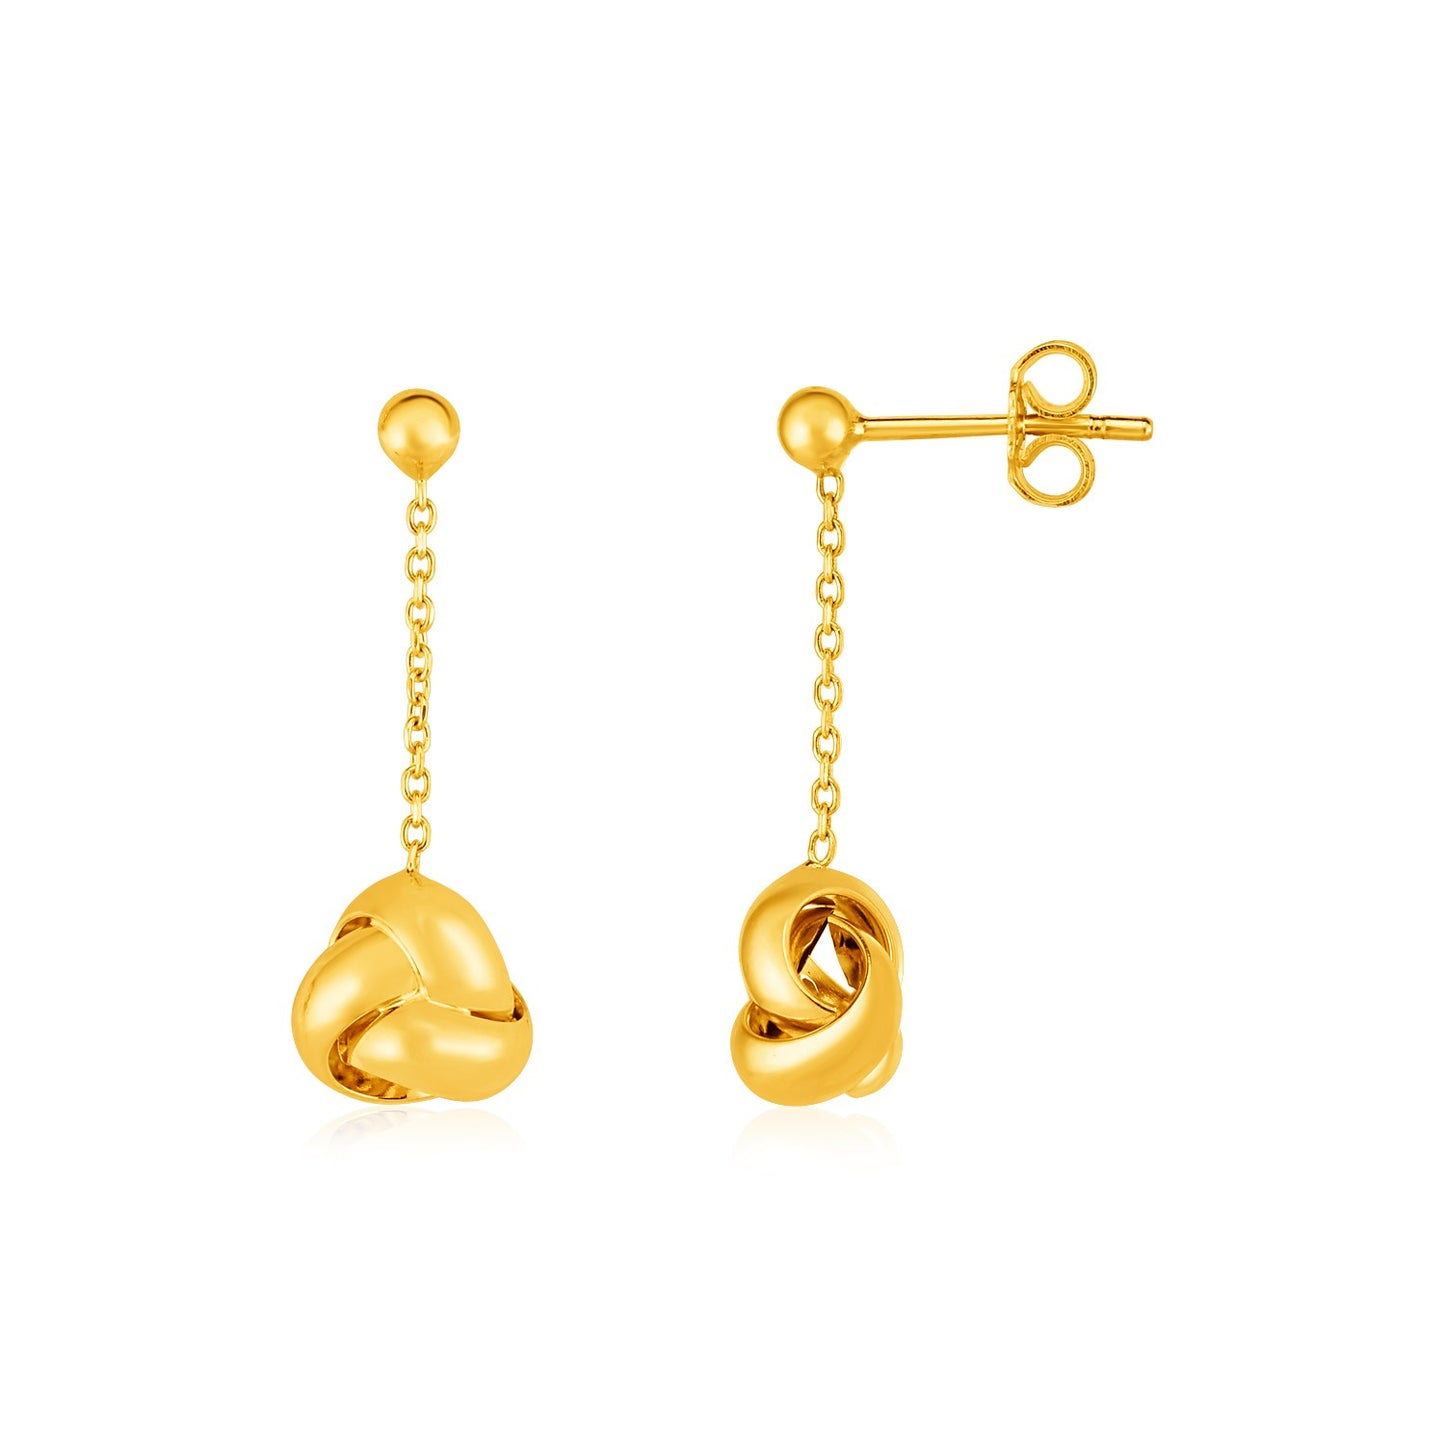 Love Knot Earrings in 14k Yellow Gold